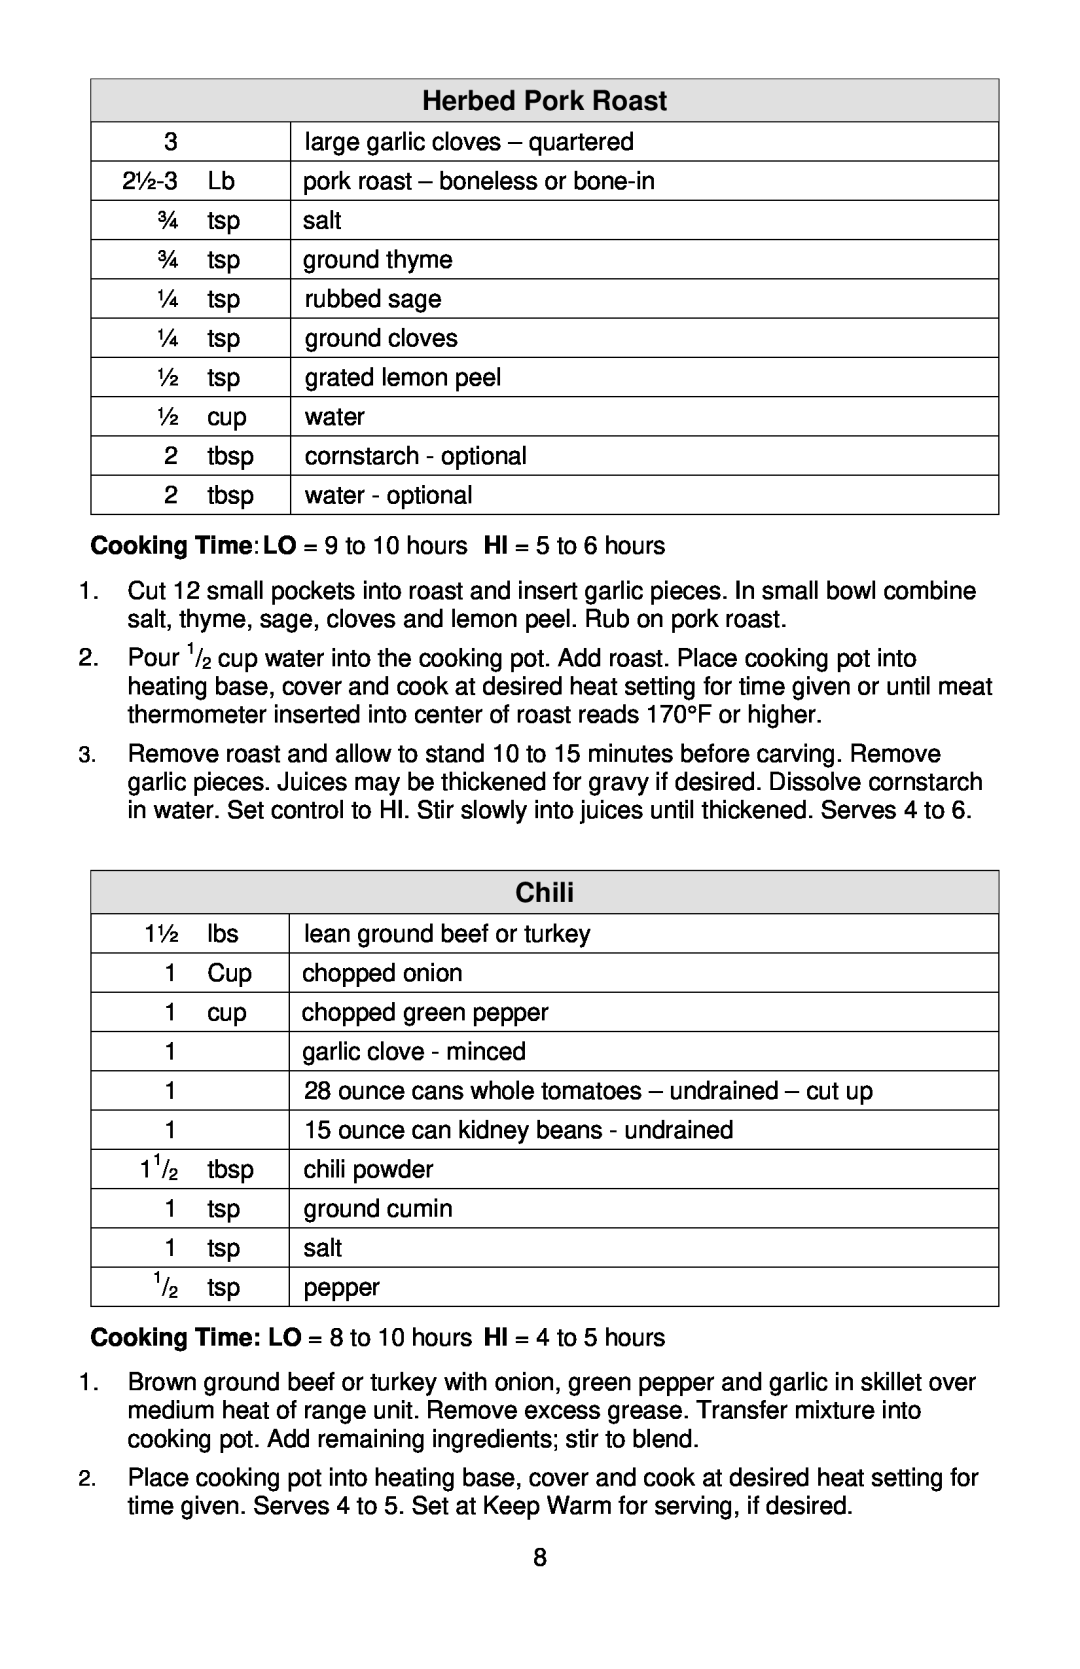 West Bend Cooker instruction manual Herbed Pork Roast, Chili 